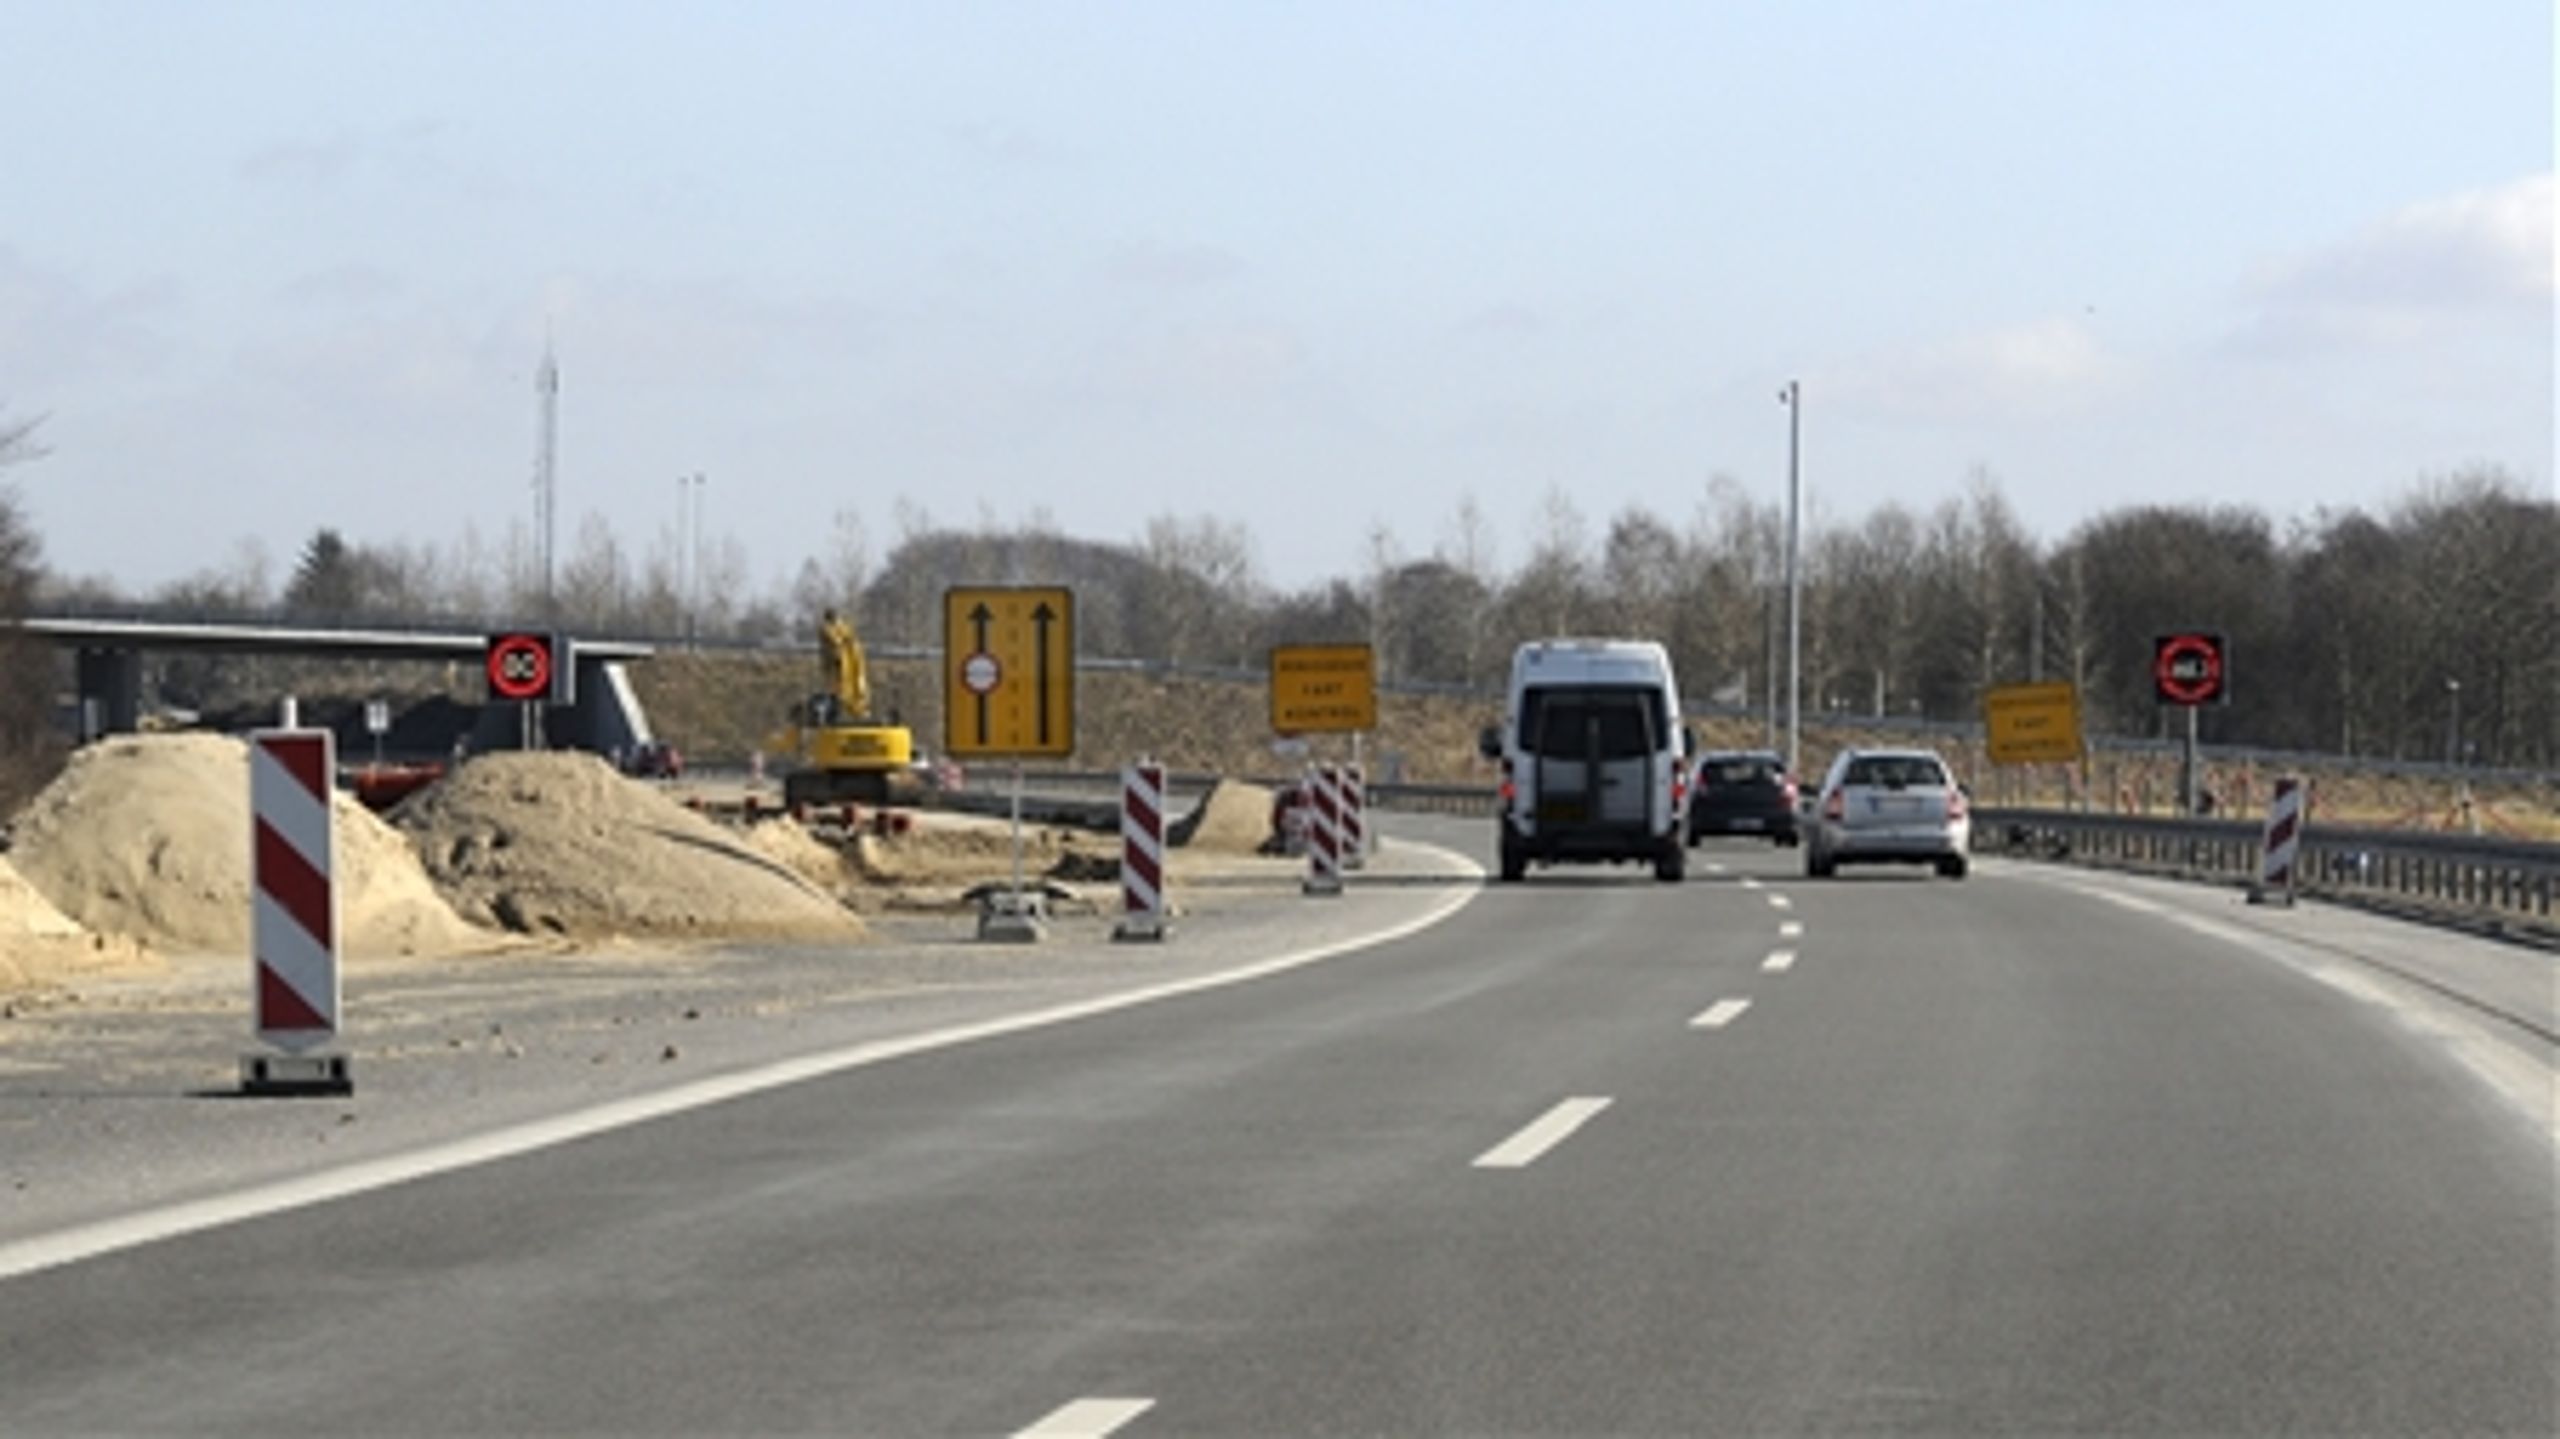 Det er urealistiske beregninger, der ligger bag argumenterne for stadig større vejkapacitet, skriver Ivan Lund Pedersen, trafikkonsulent i NOAH-Trafik.